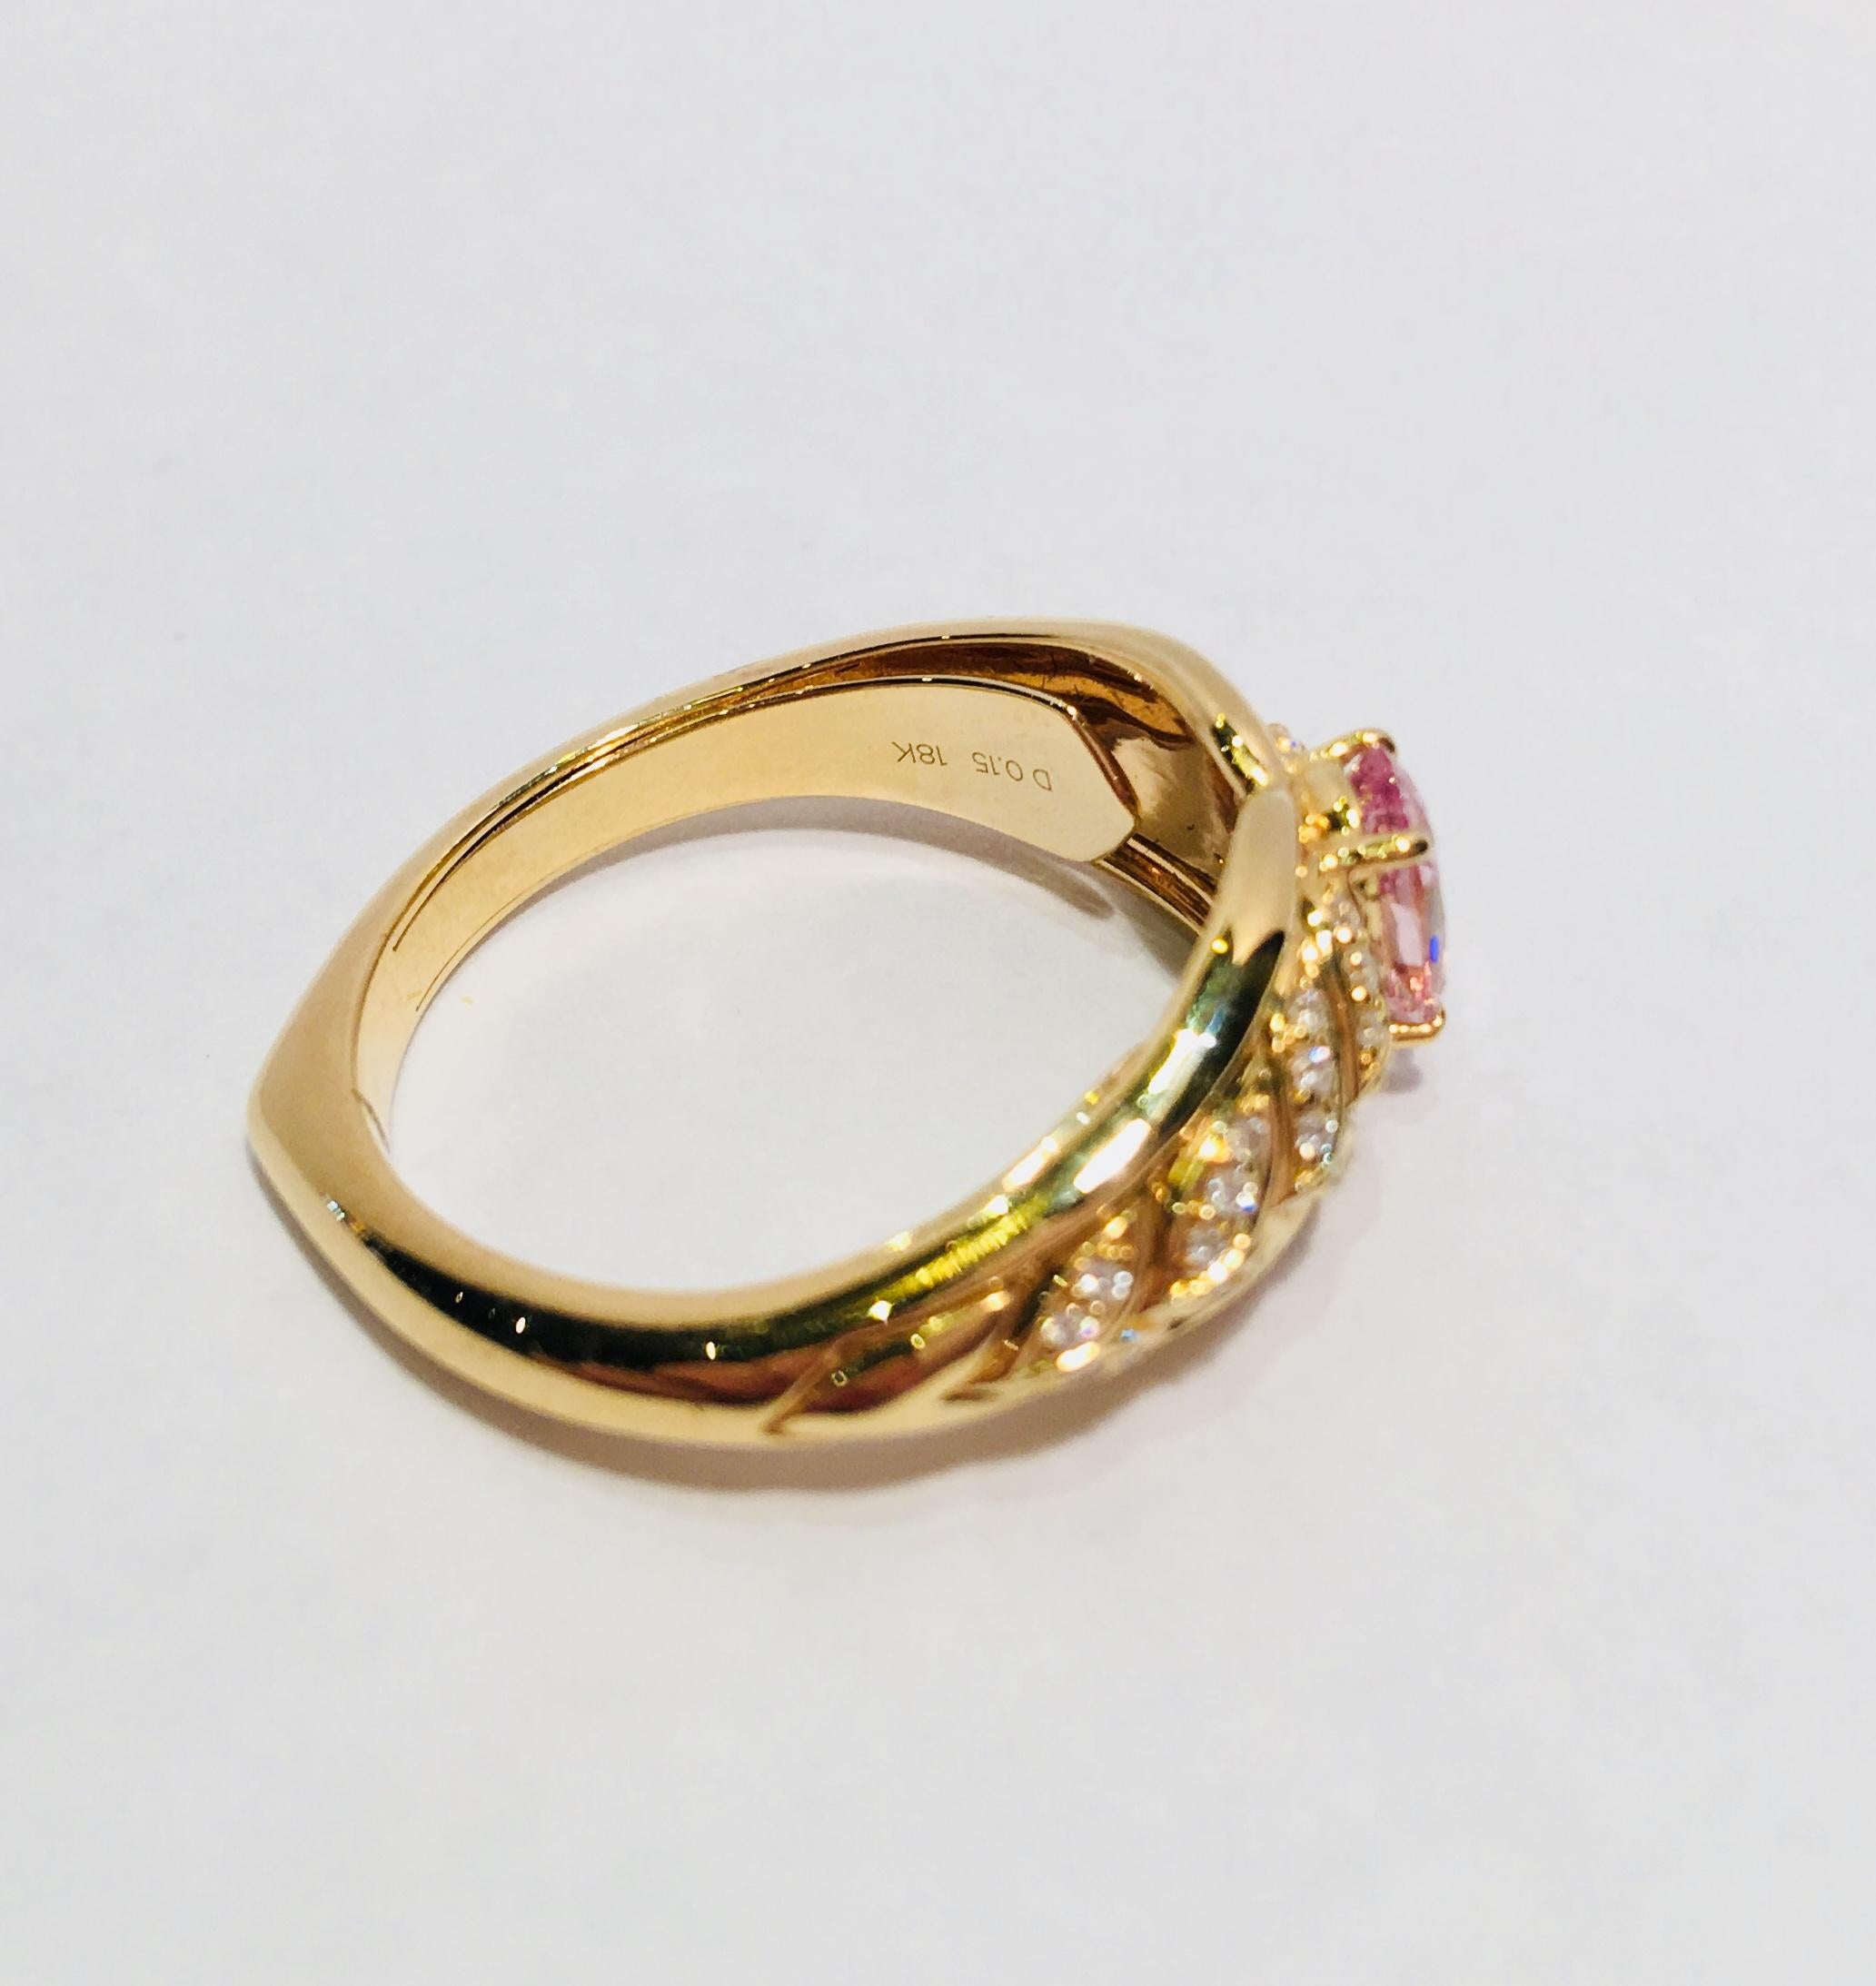 Kat Florence Pink Mogok Spinel D Flawless Diamonds 18 Karat Gold Designer Ring 5